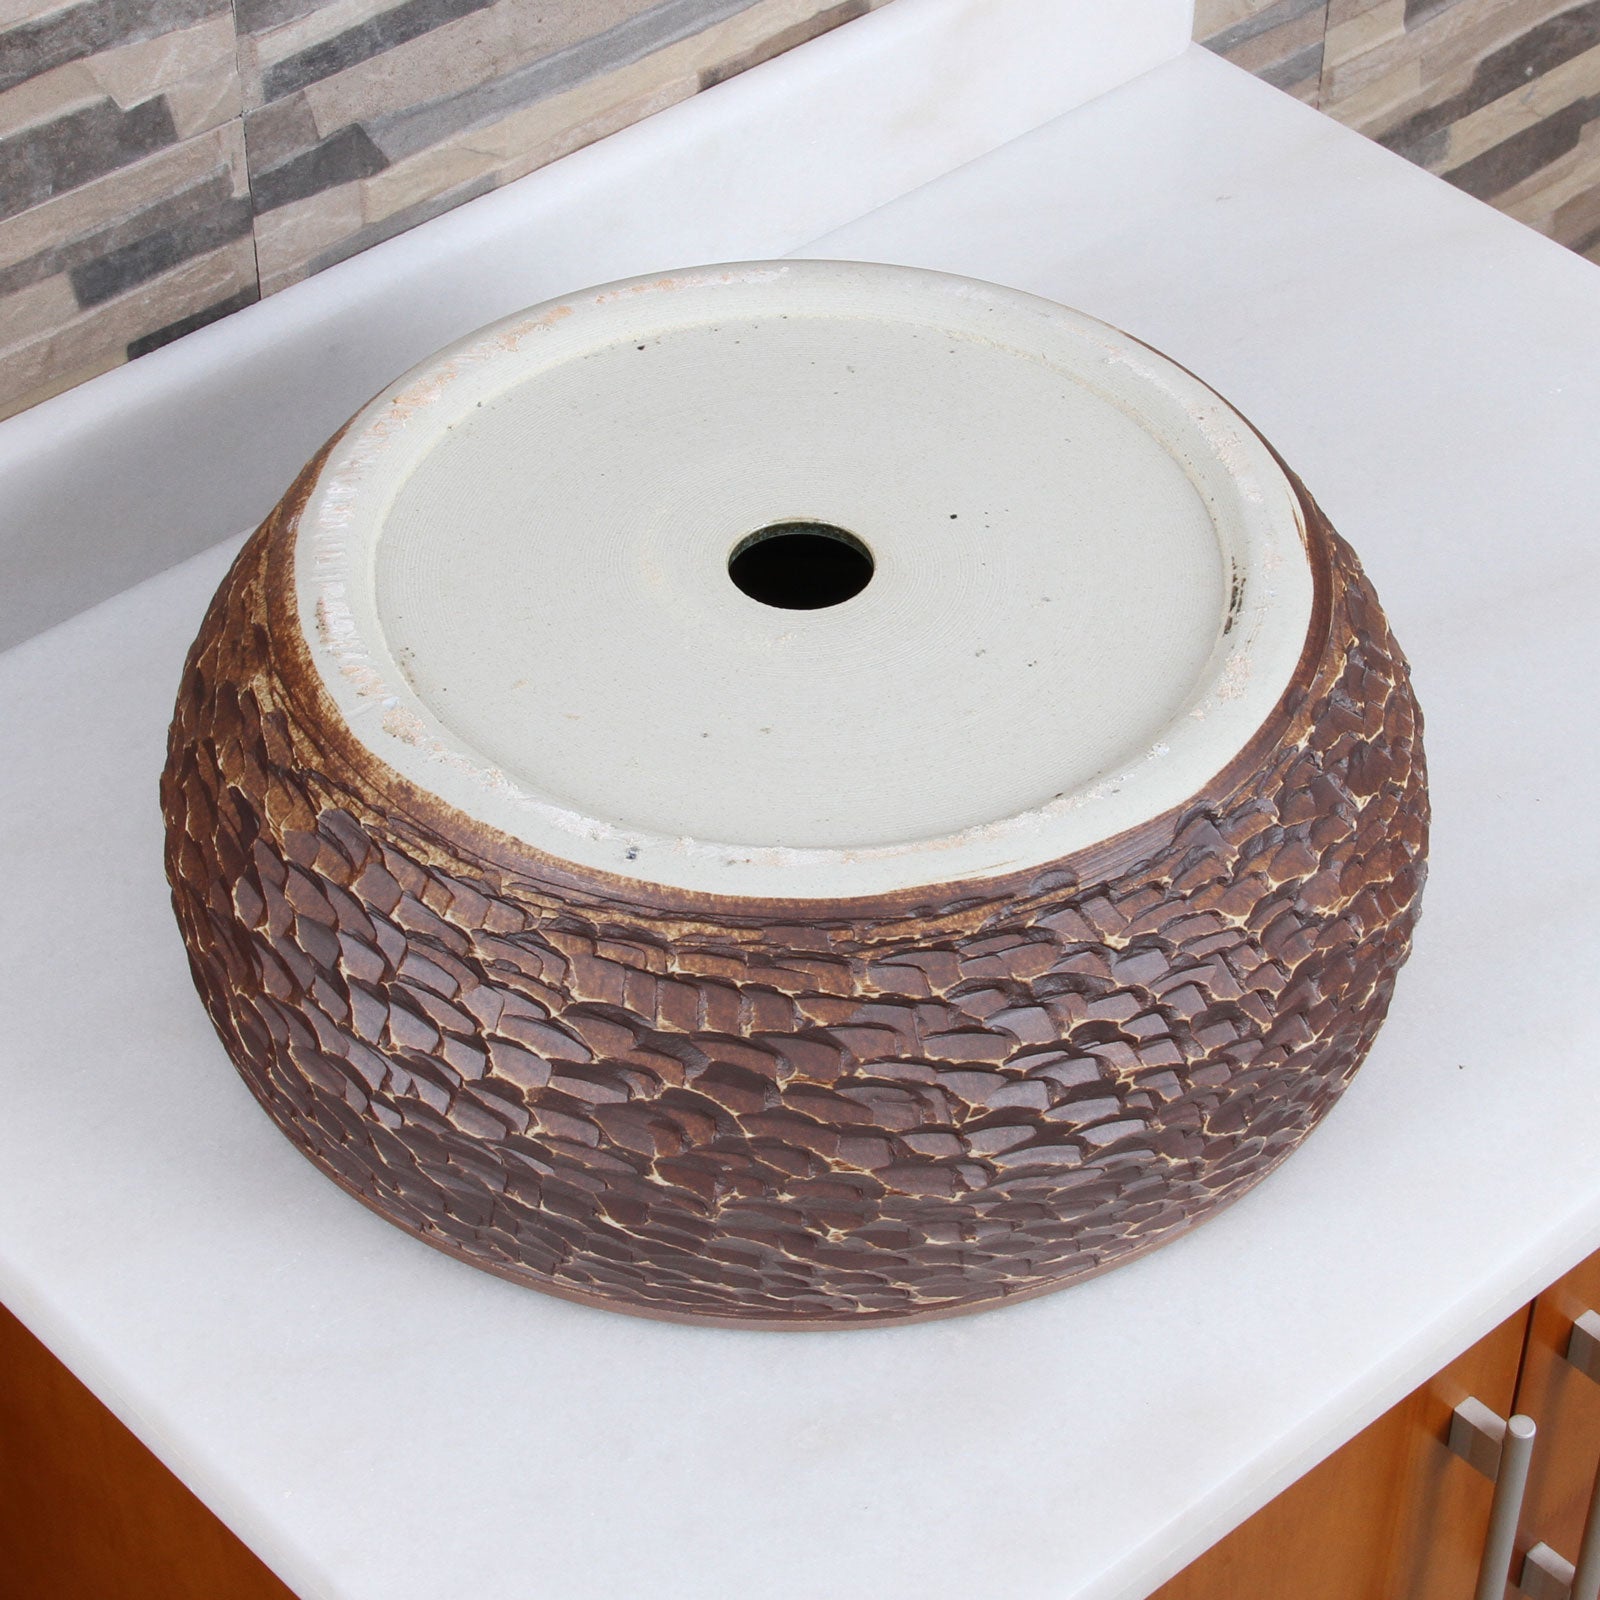 ELITE Round Green Bowl Porcelain Ceramic Bathroom Vessel Sink 1573